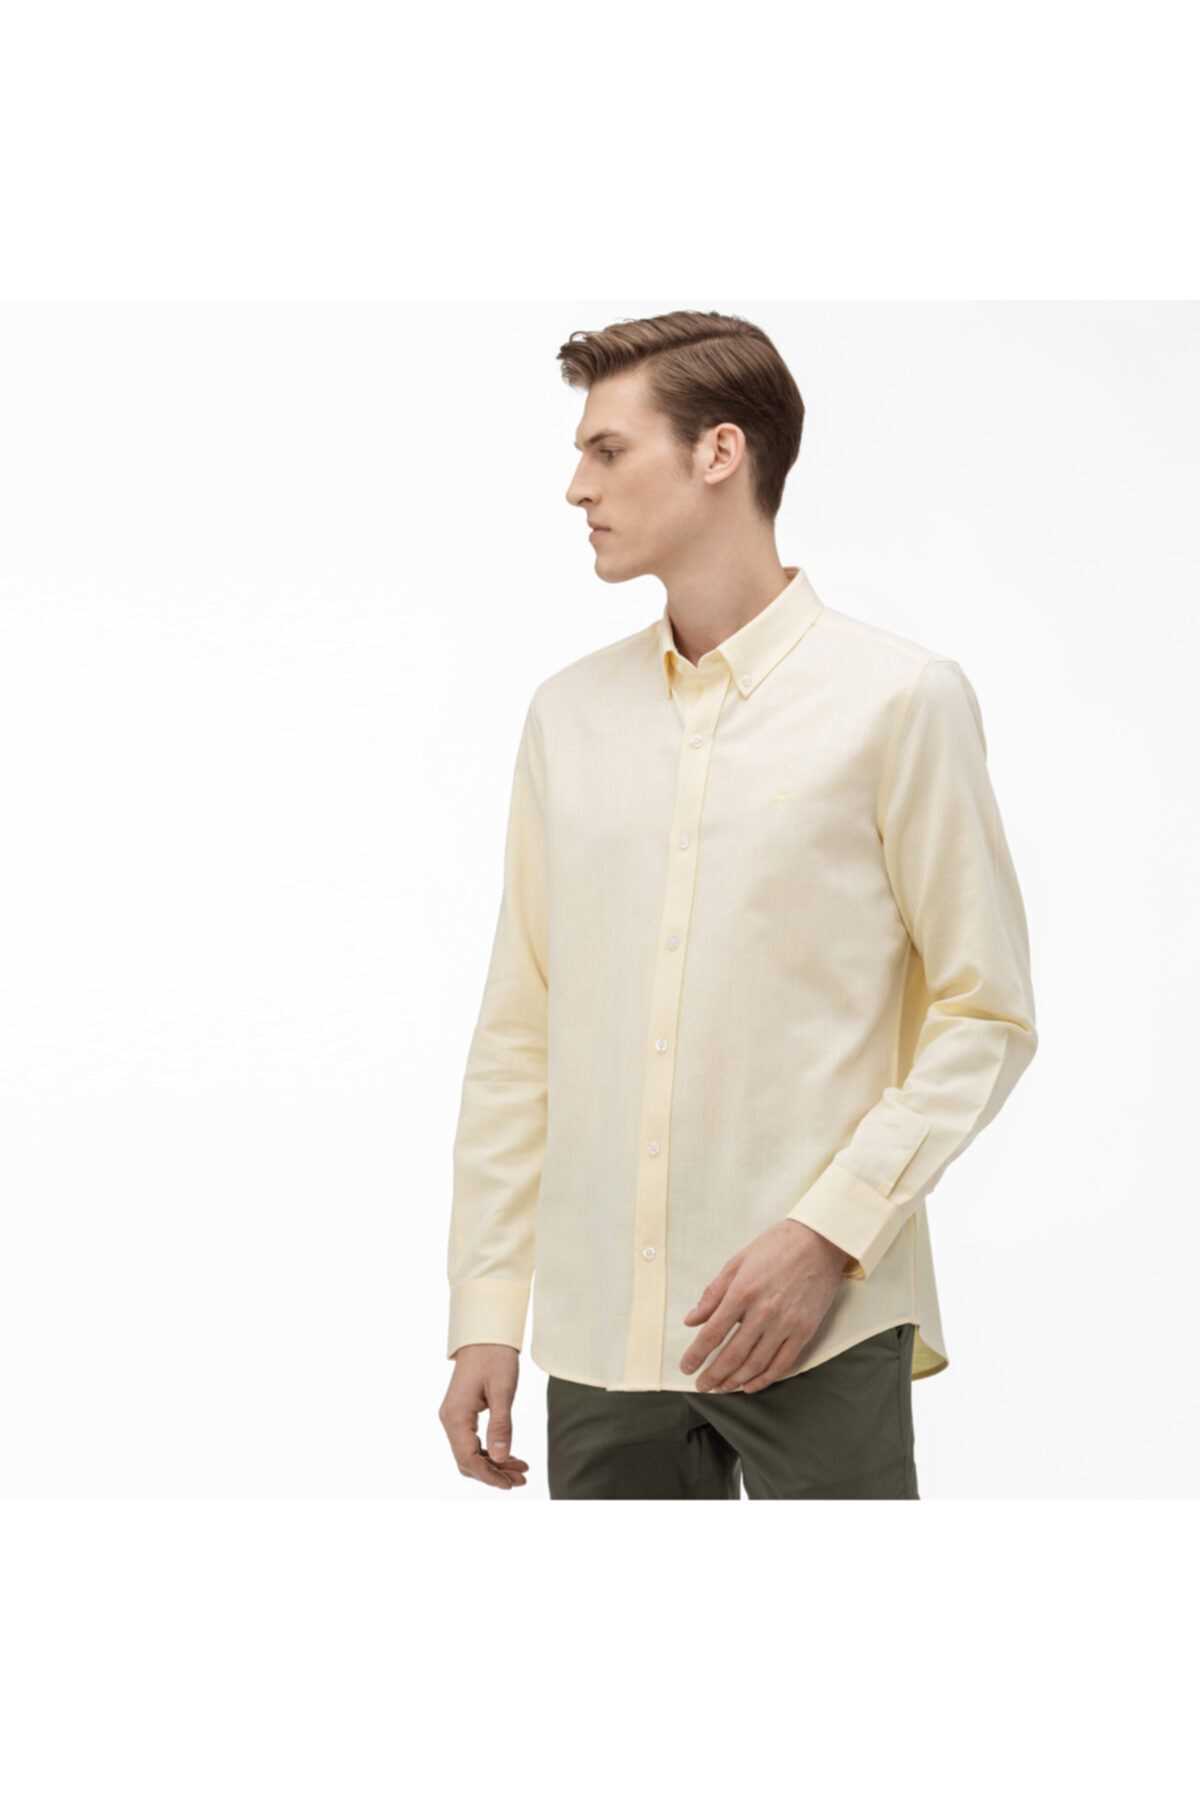 خرید ارزان پیراهن مردانه کلاسیک برند لاگوست رنگ زرد ty34809628